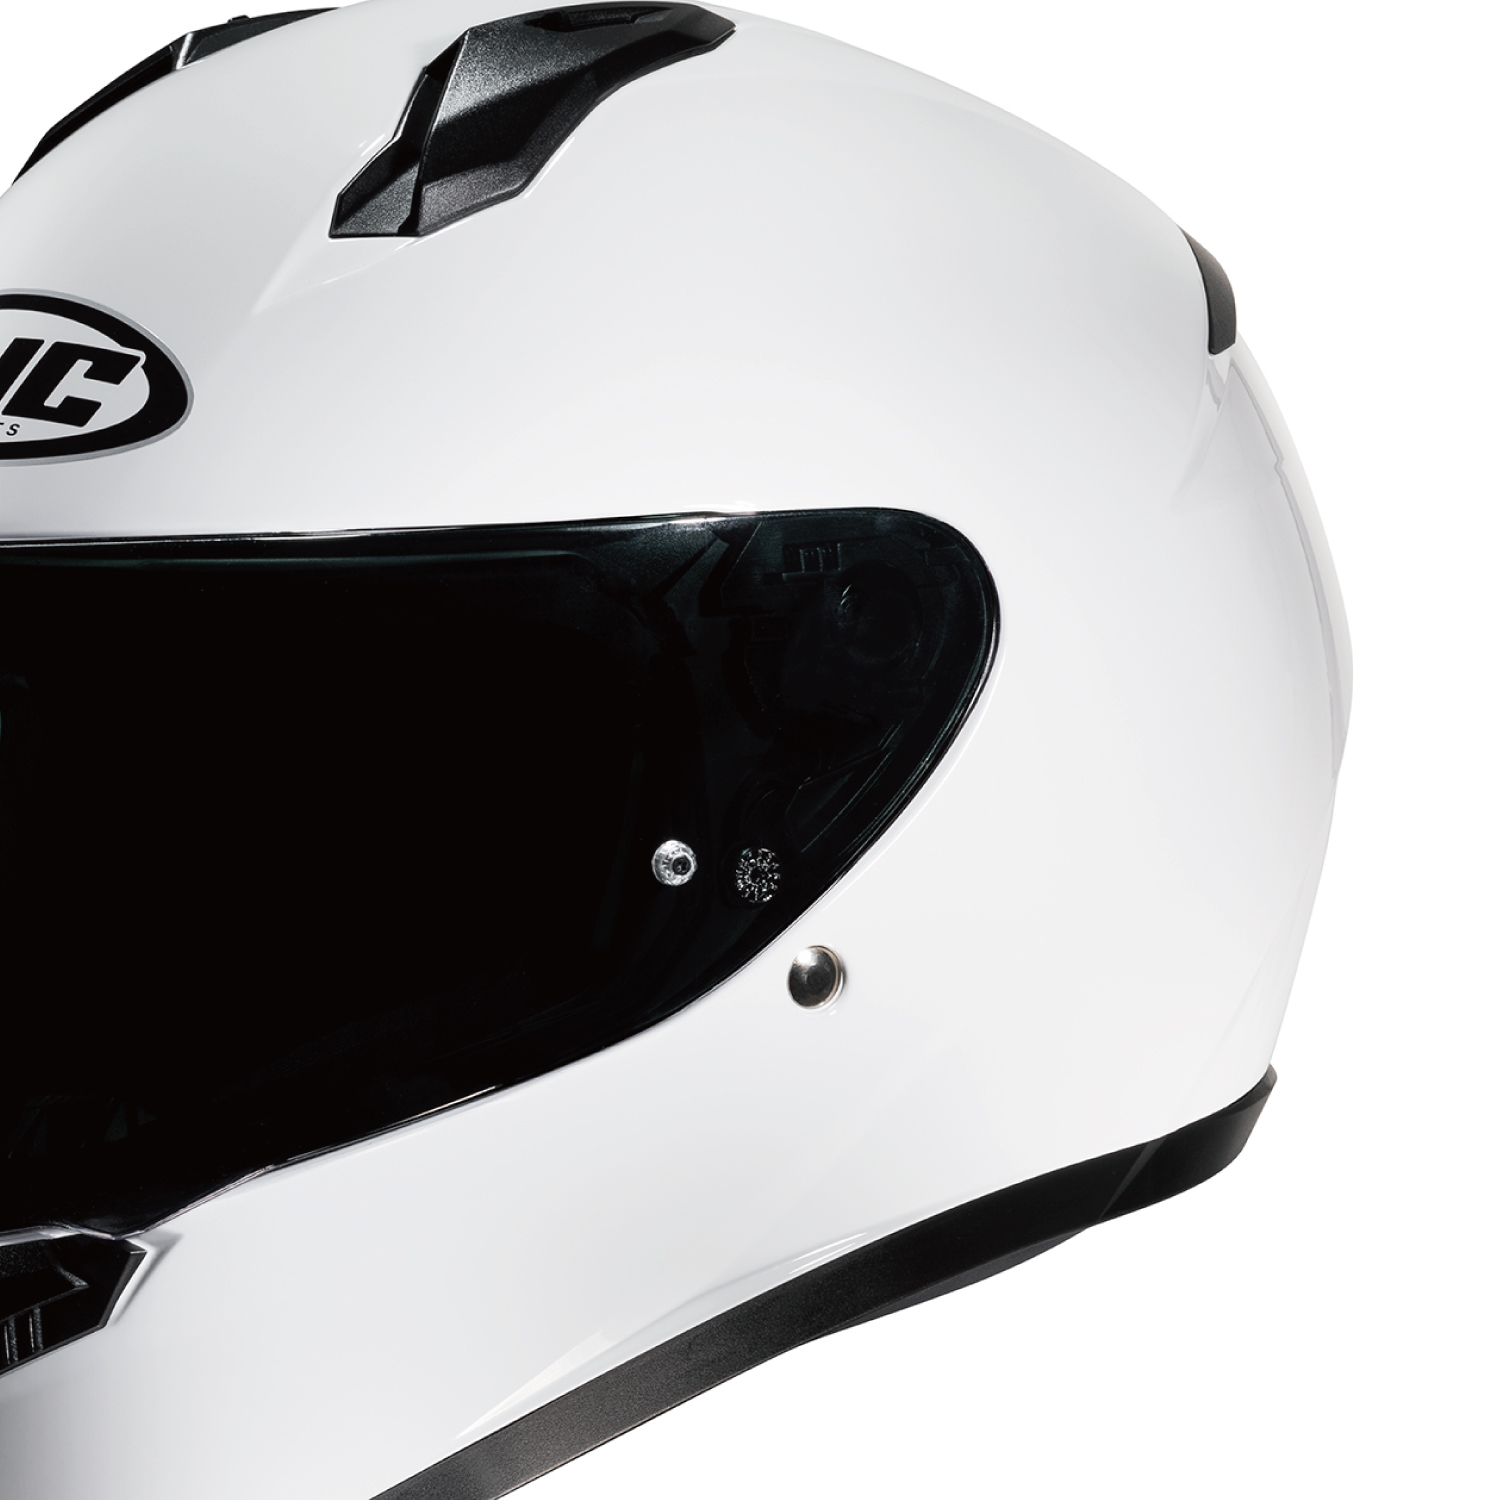 流行販売 HJC Helmets:C10 インカ GRAY(MC3H) S HJH236GY01S C10